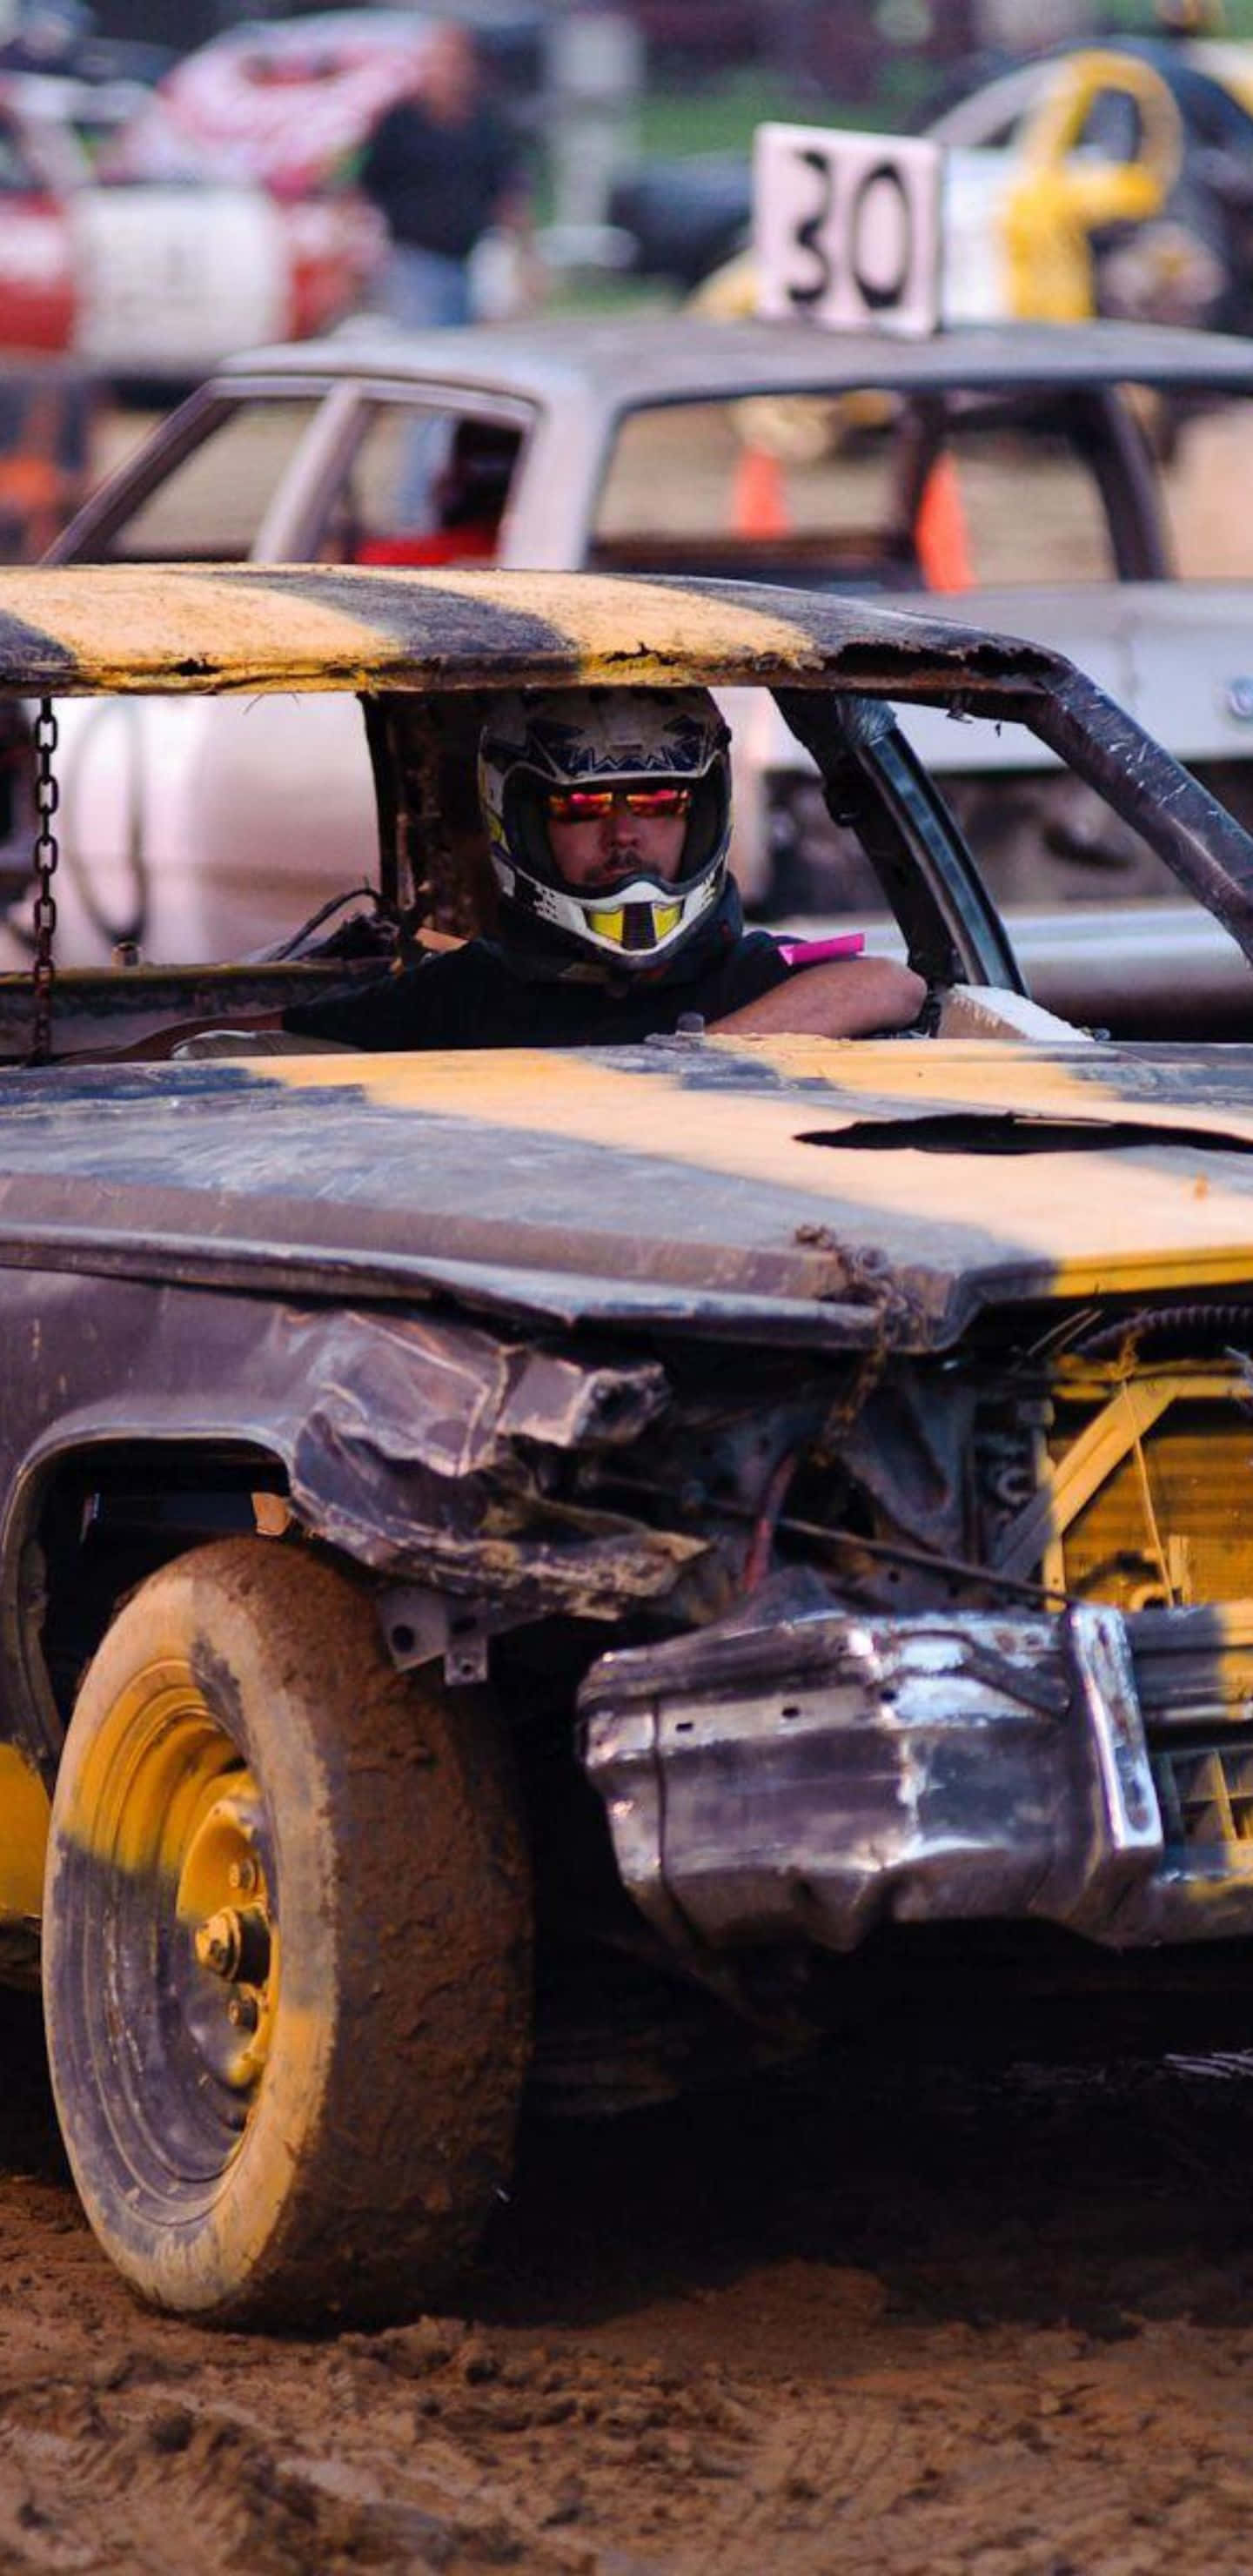 Hintergrundbildvon Einem Mit Schlamm Bedeckten Dirt Showdown Auto.